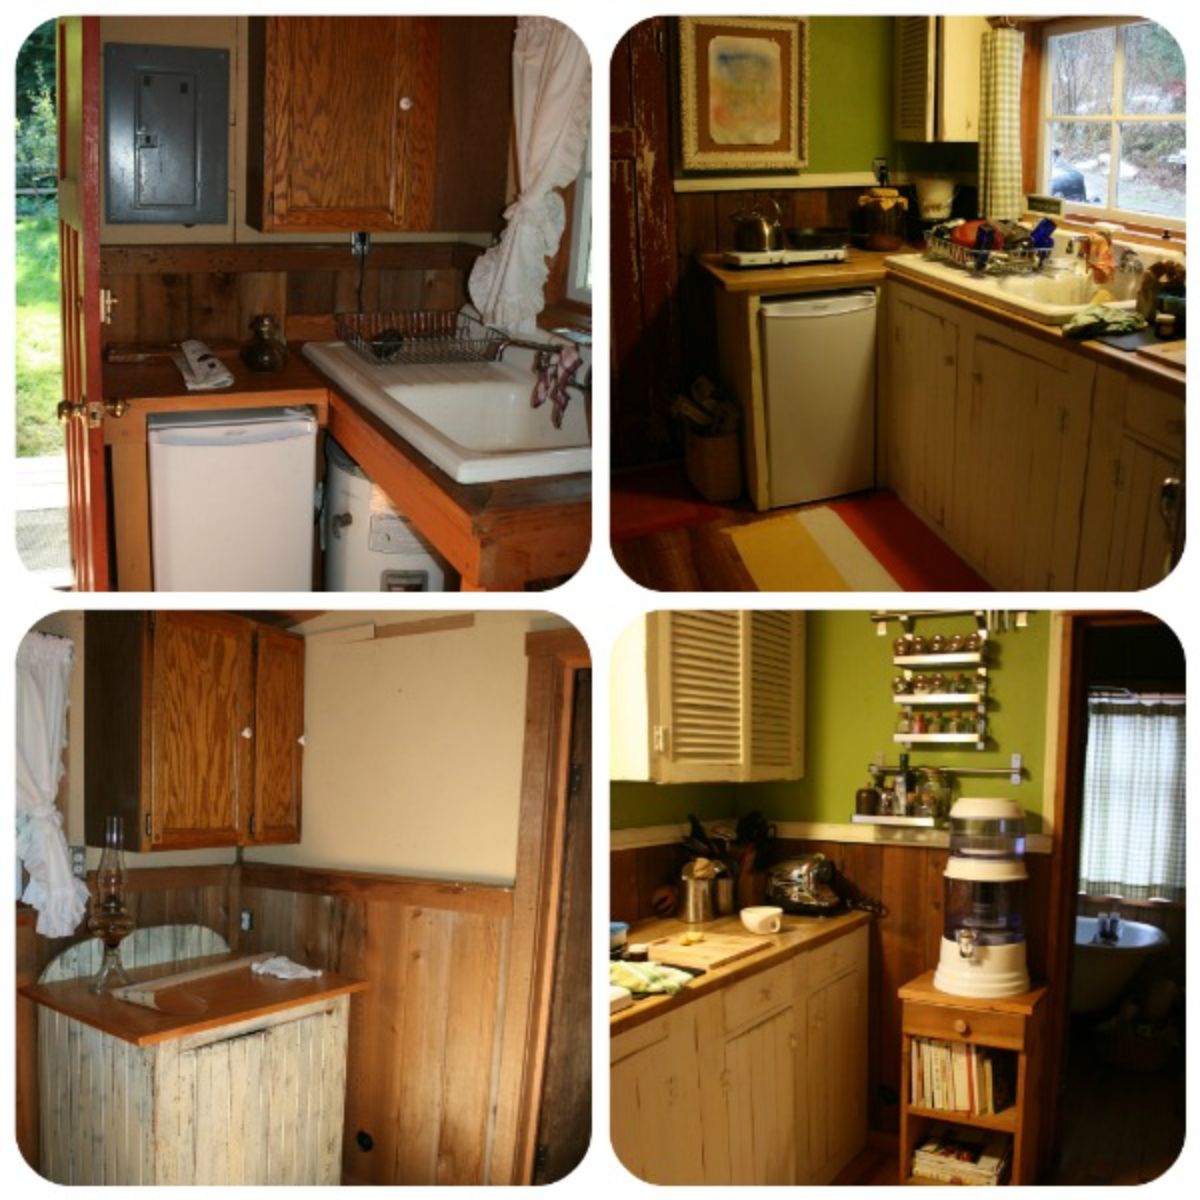 Log cabin kitchen interior styles